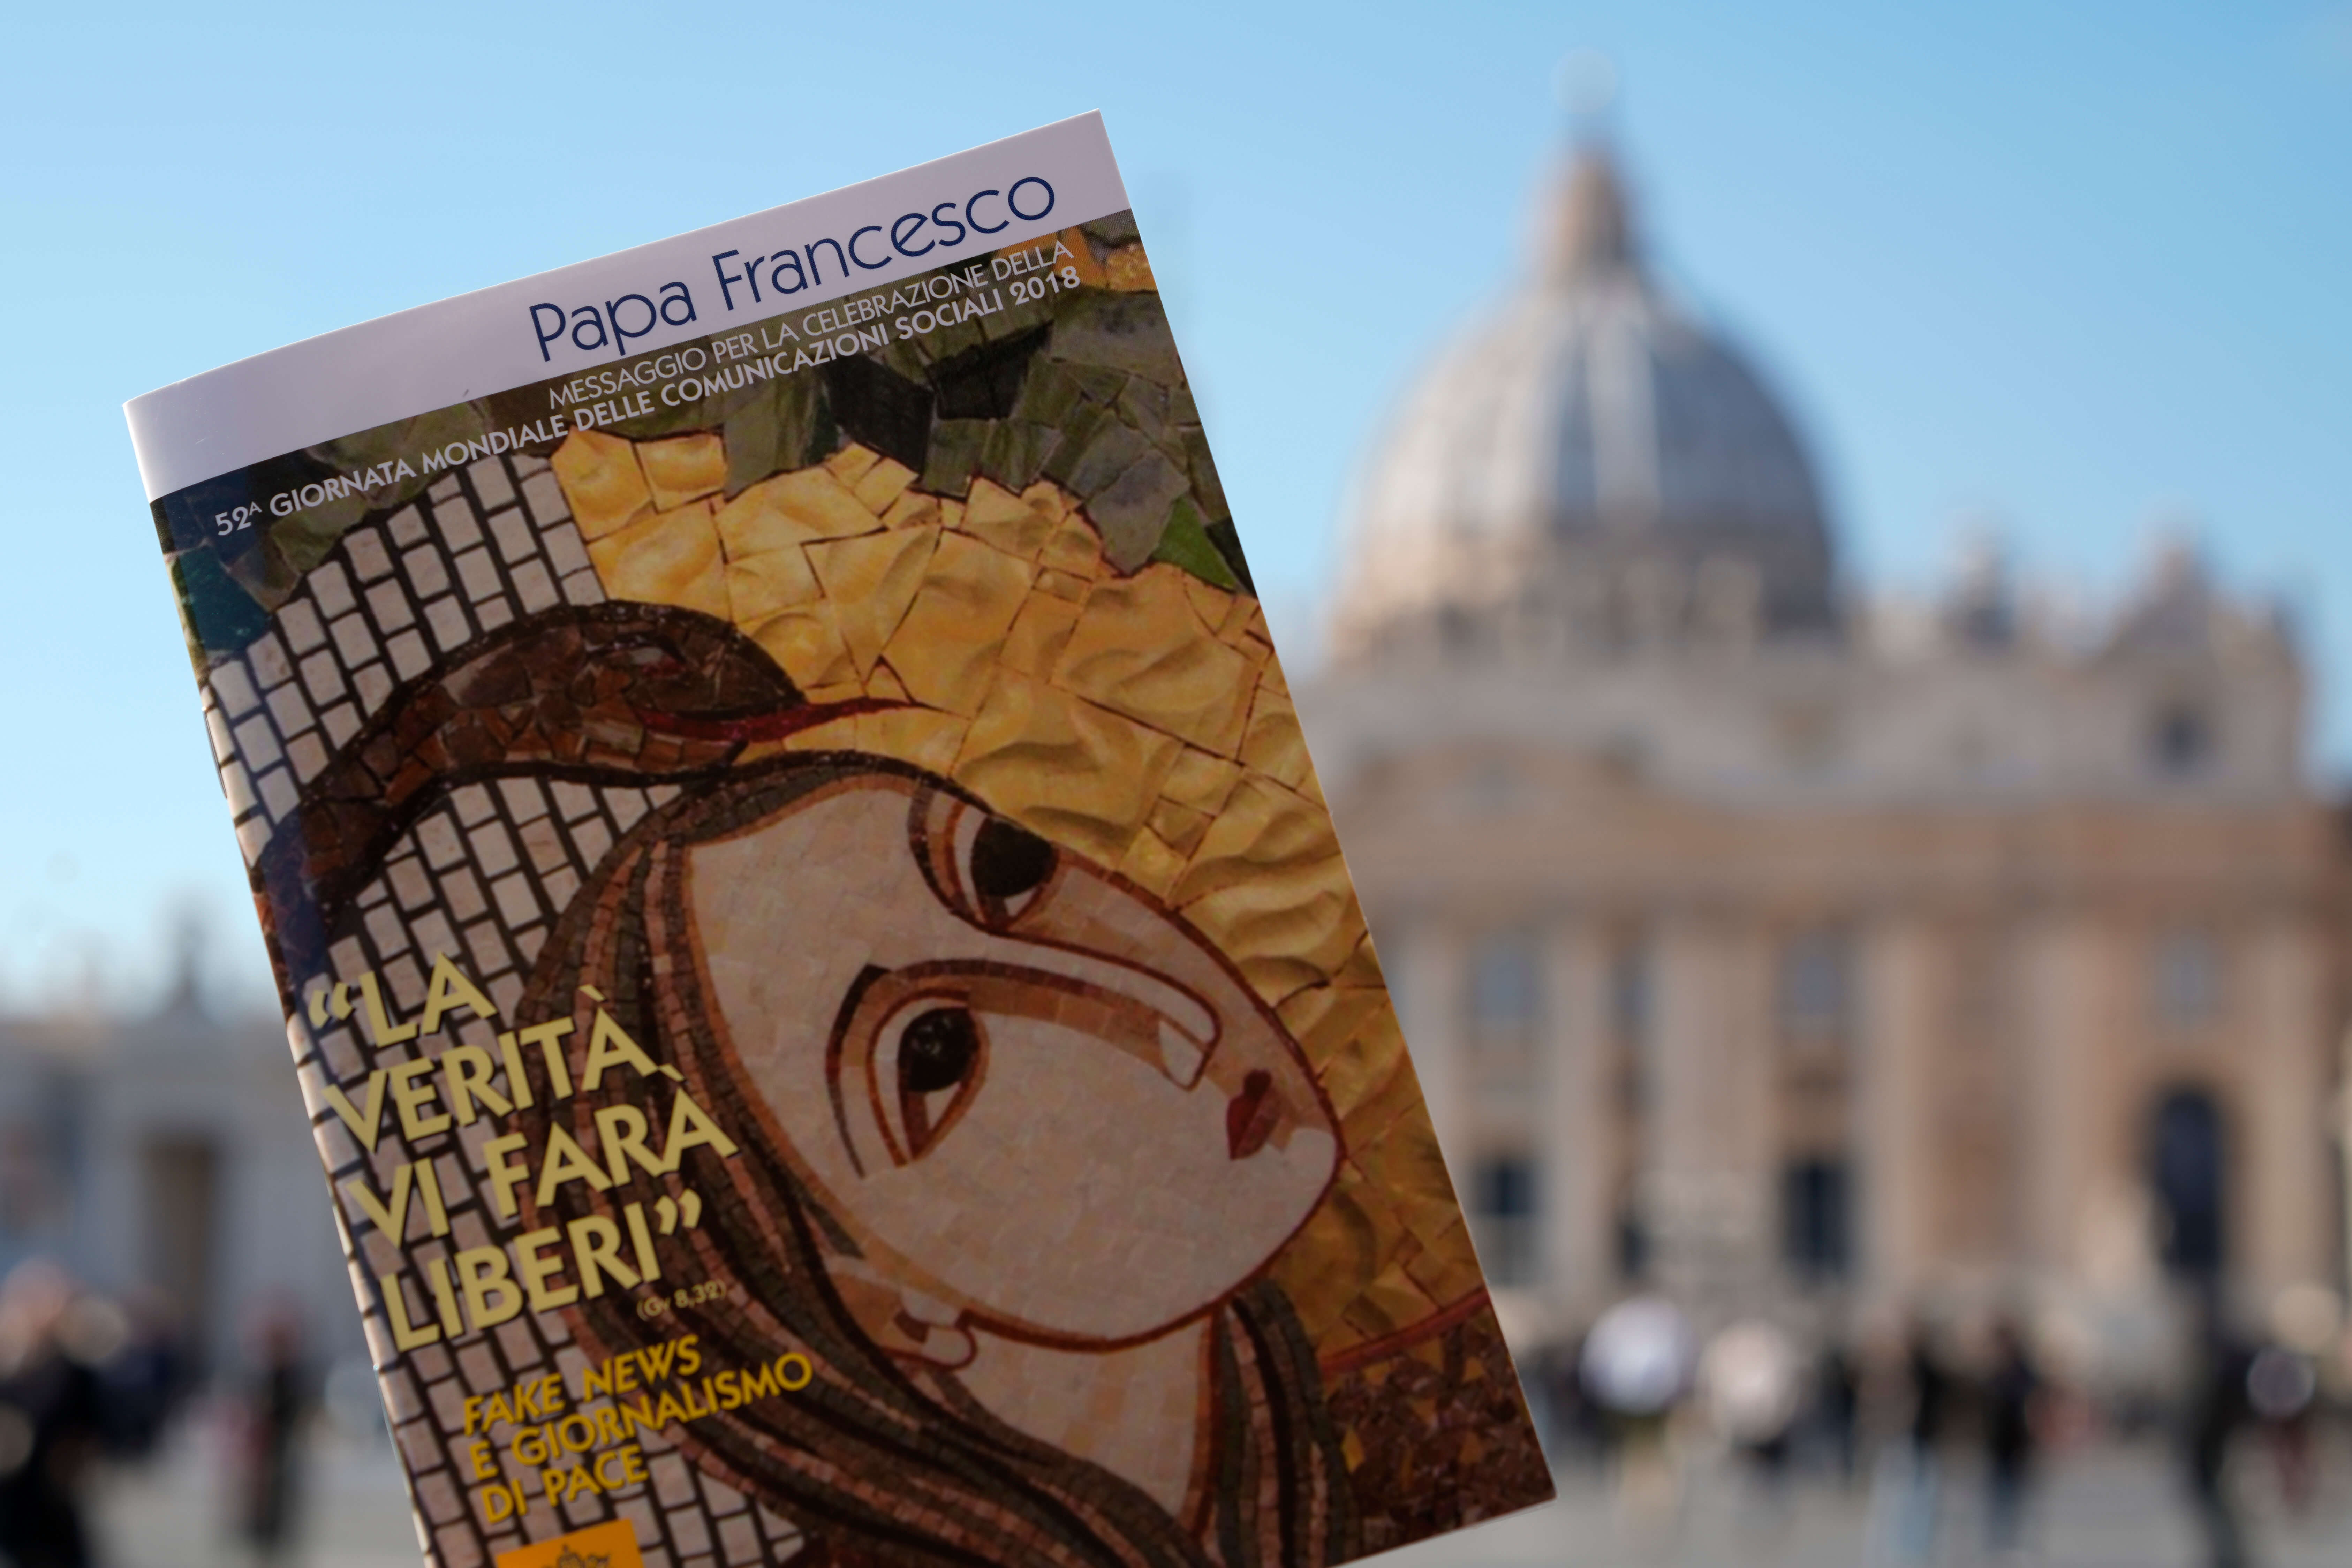 El papa Francisco condena noticias falsas y aboga por periodismo de paz